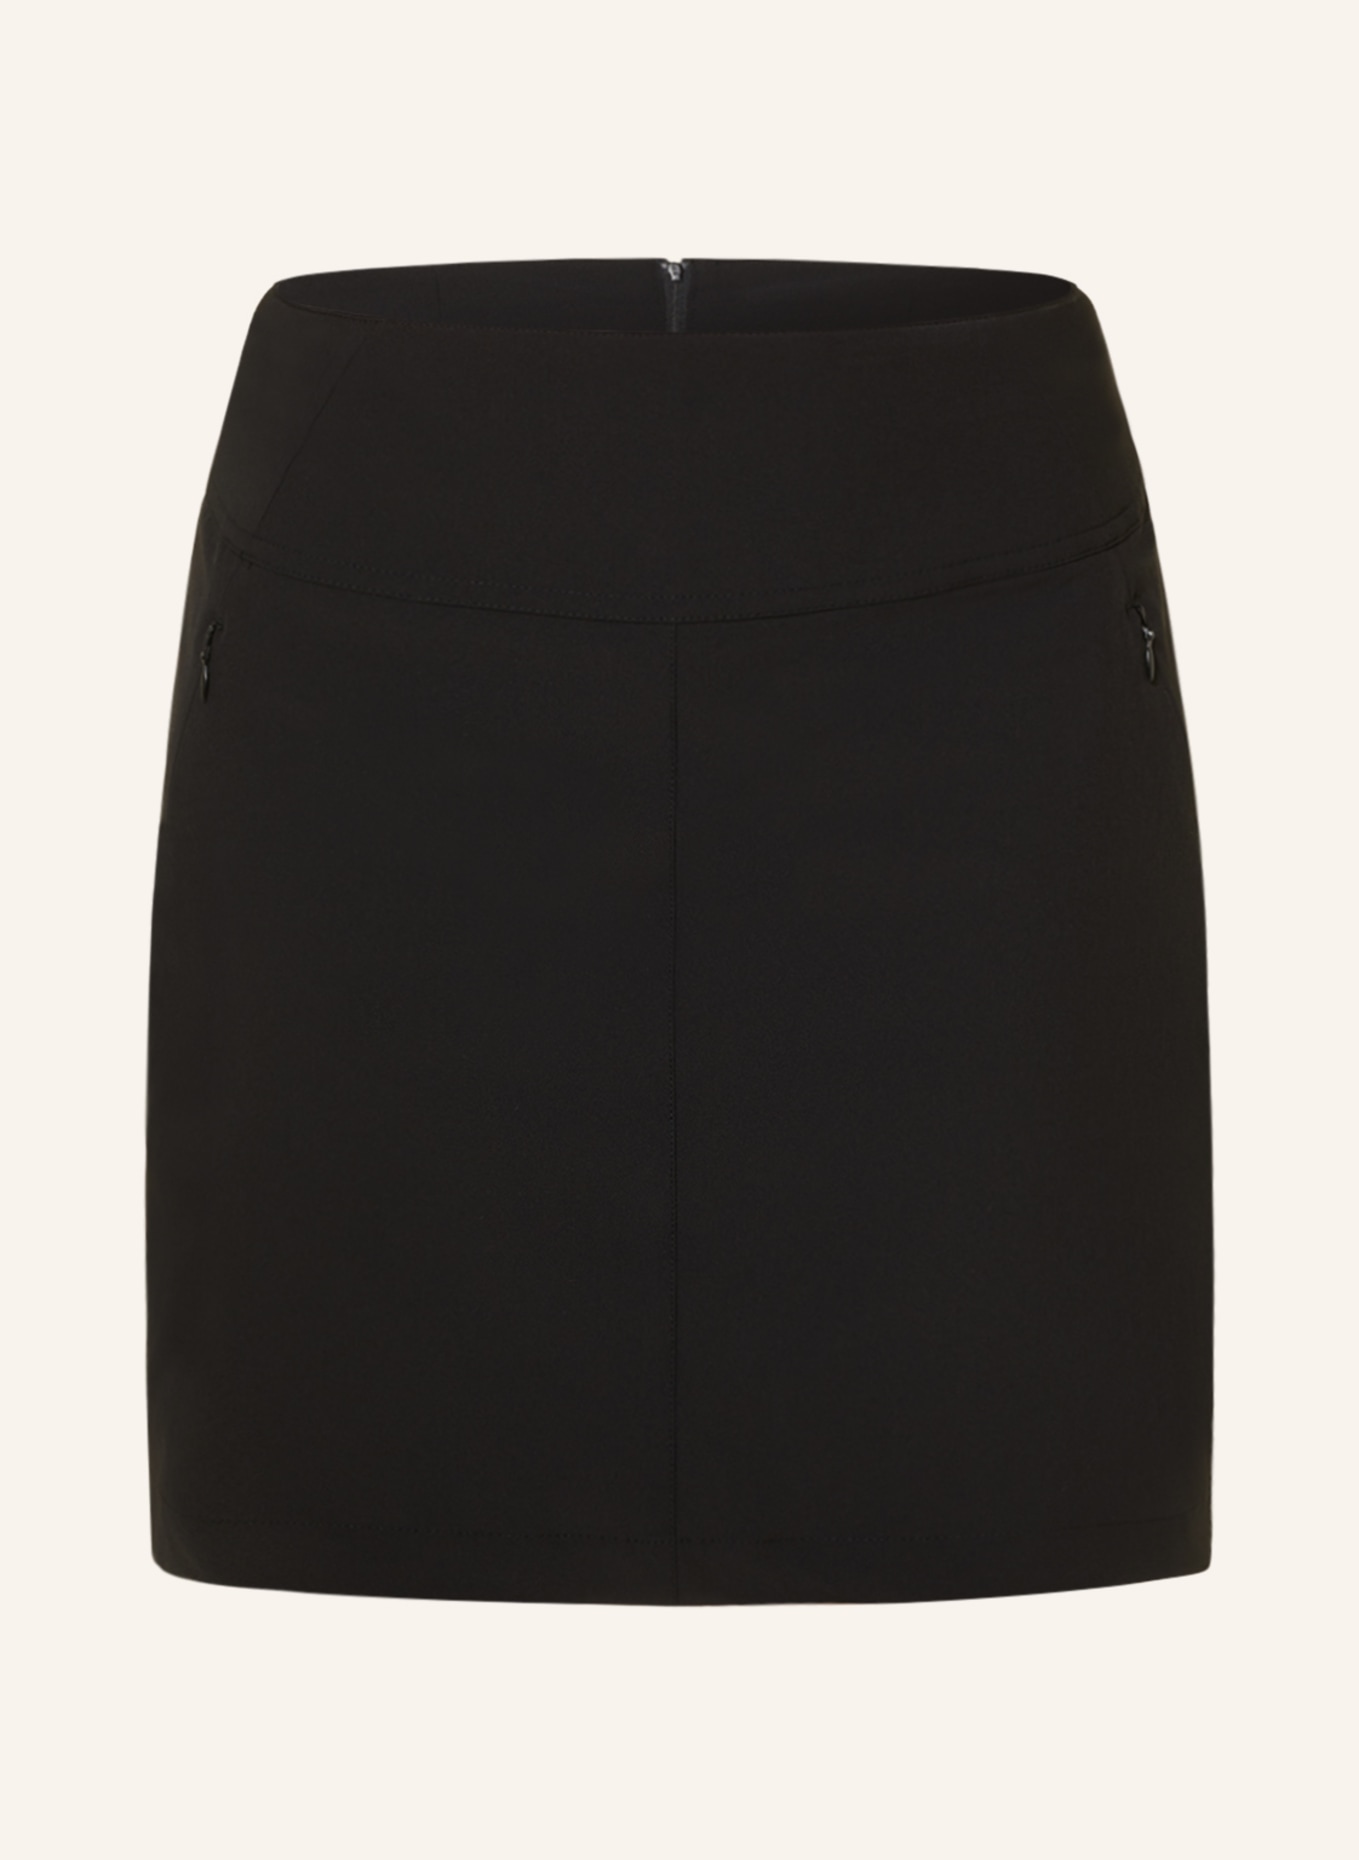 me°ru' Outdoor skirt NANTERRE, Color: BLACK (Image 1)